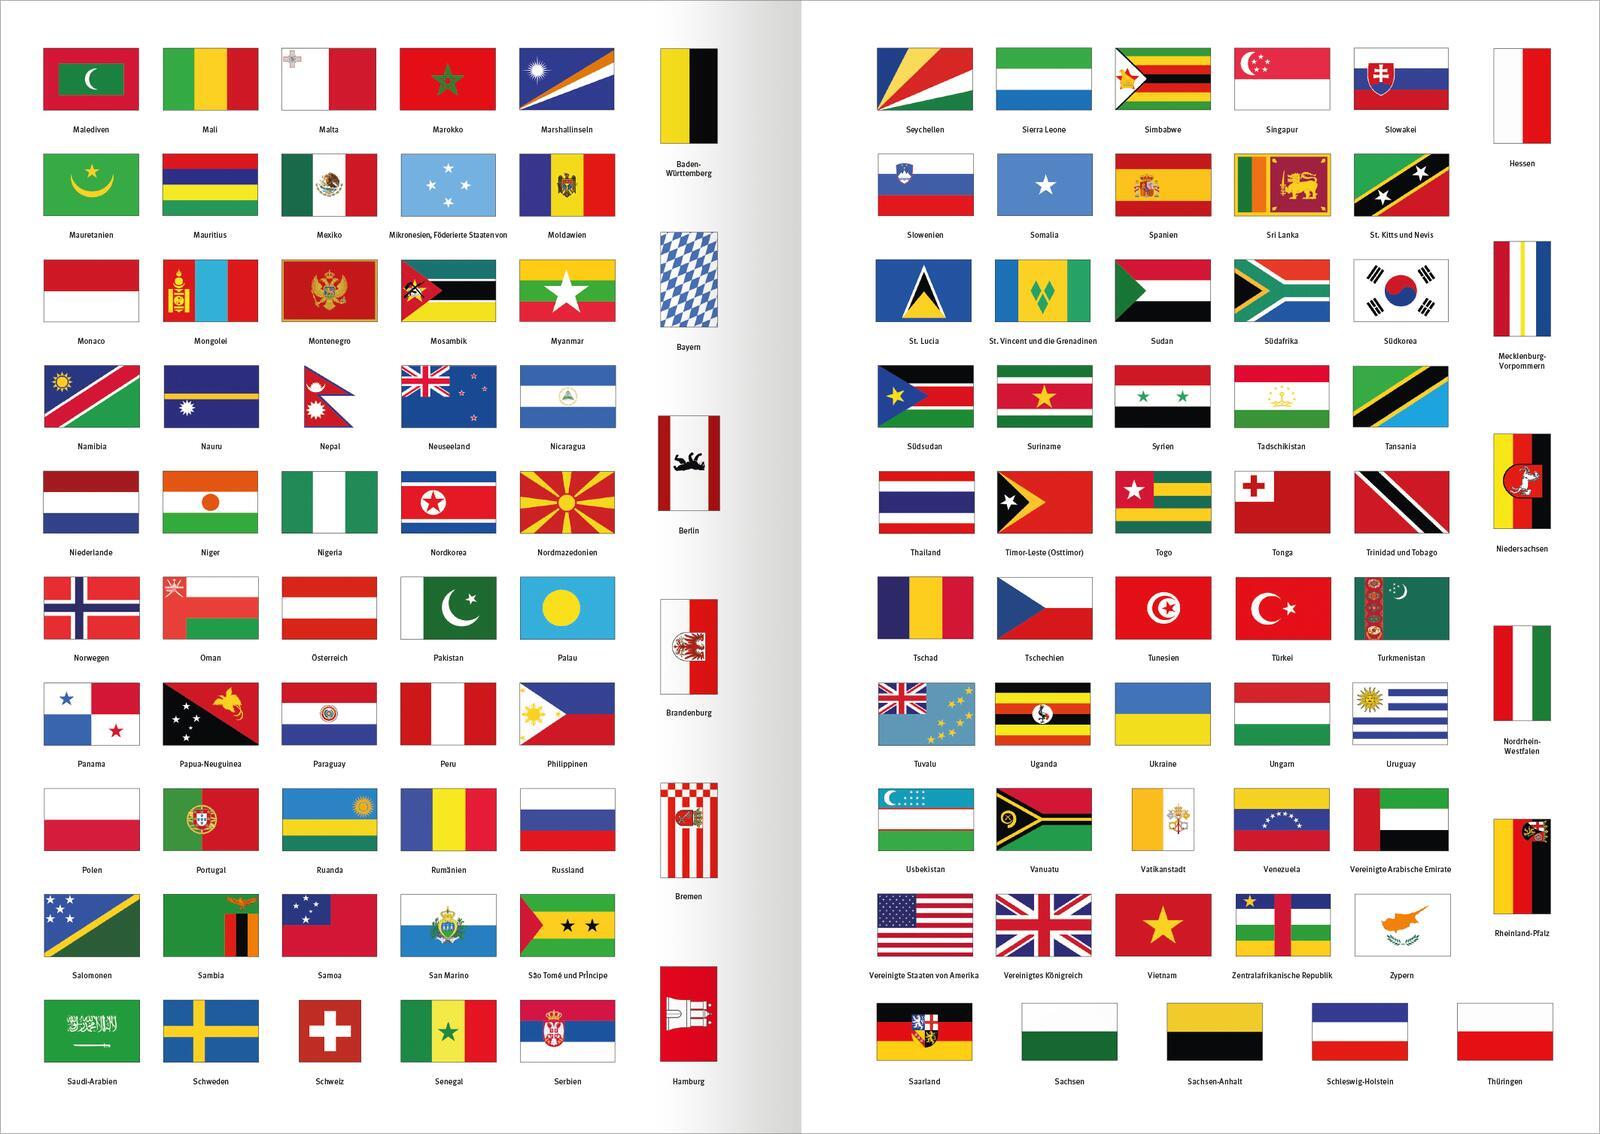 Alle Flaggen der Welt (kartoniertes Buch)